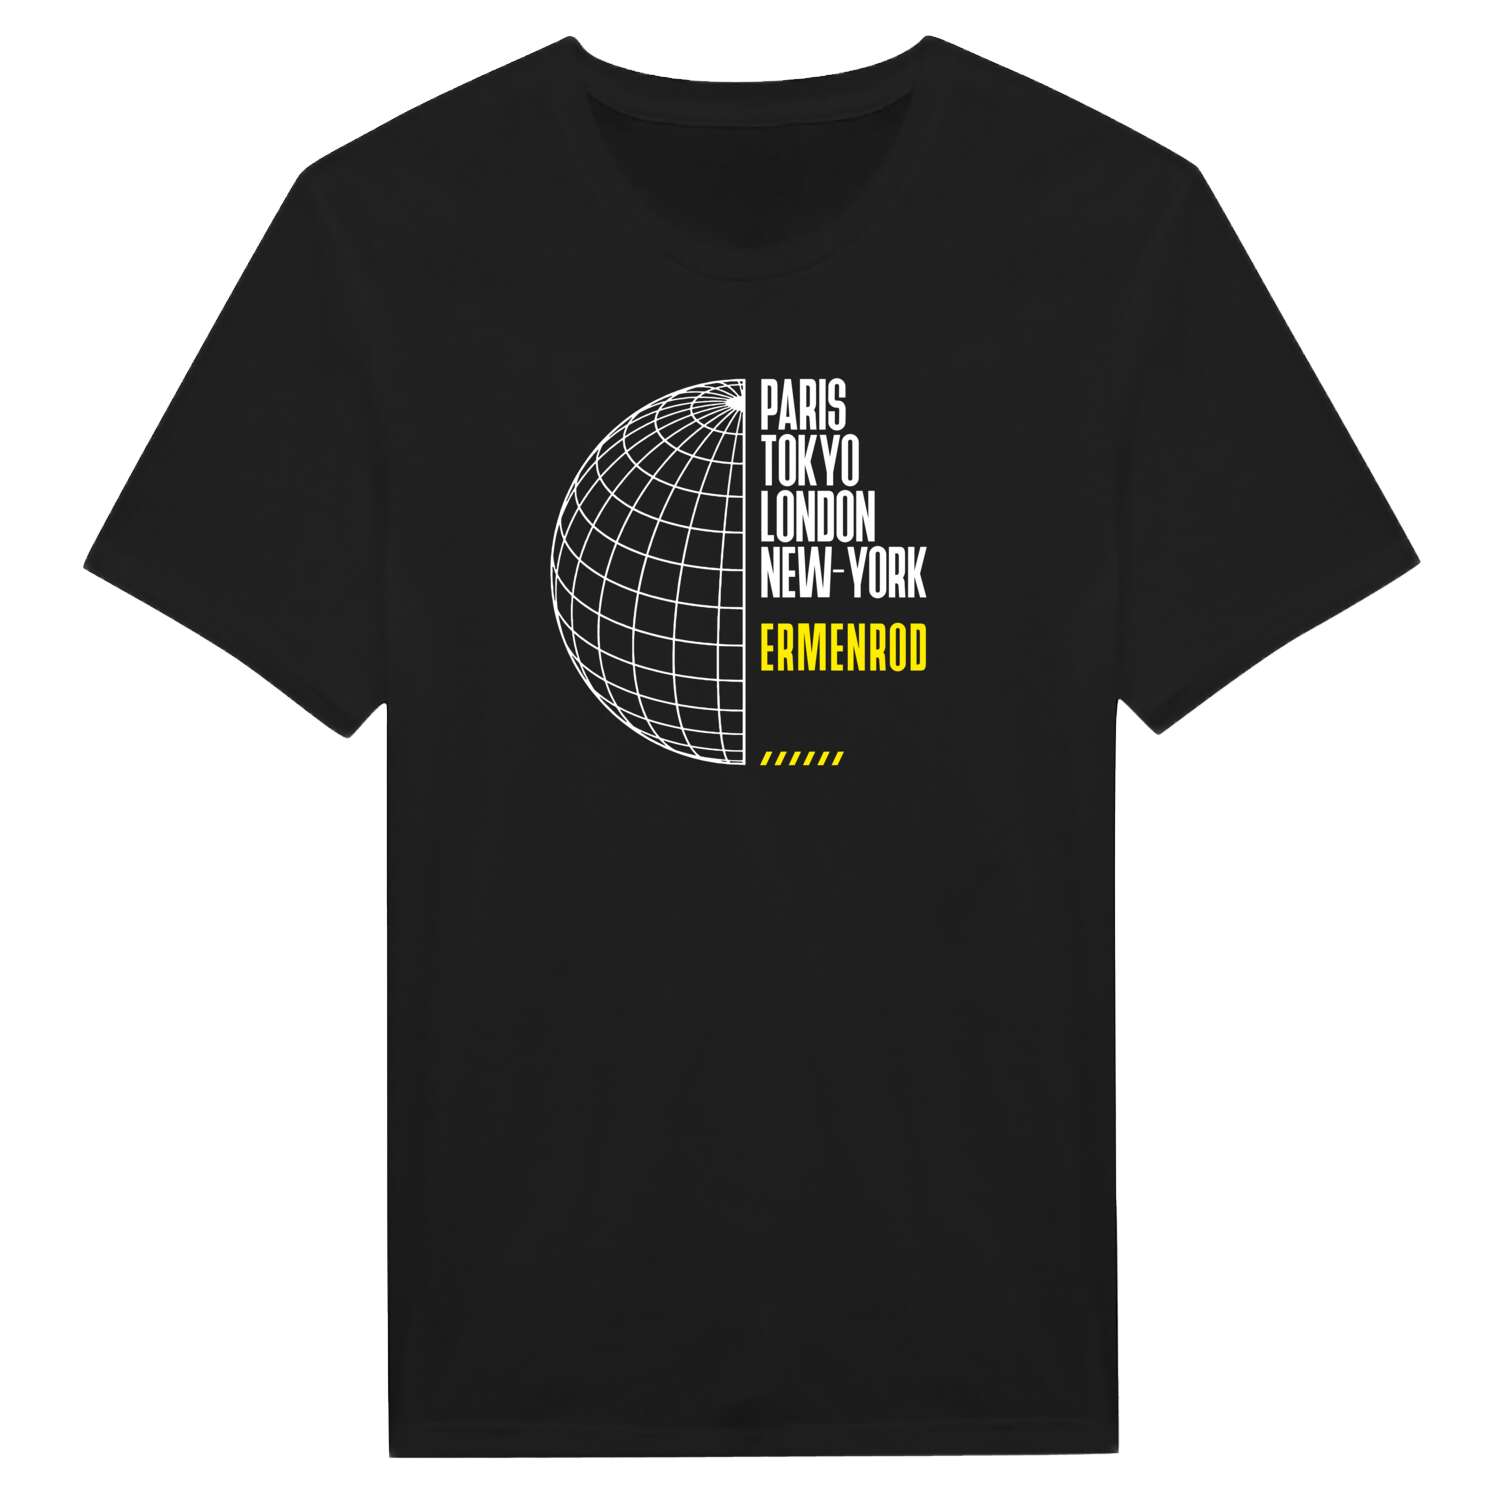 Ermenrod T-Shirt »Paris Tokyo London«